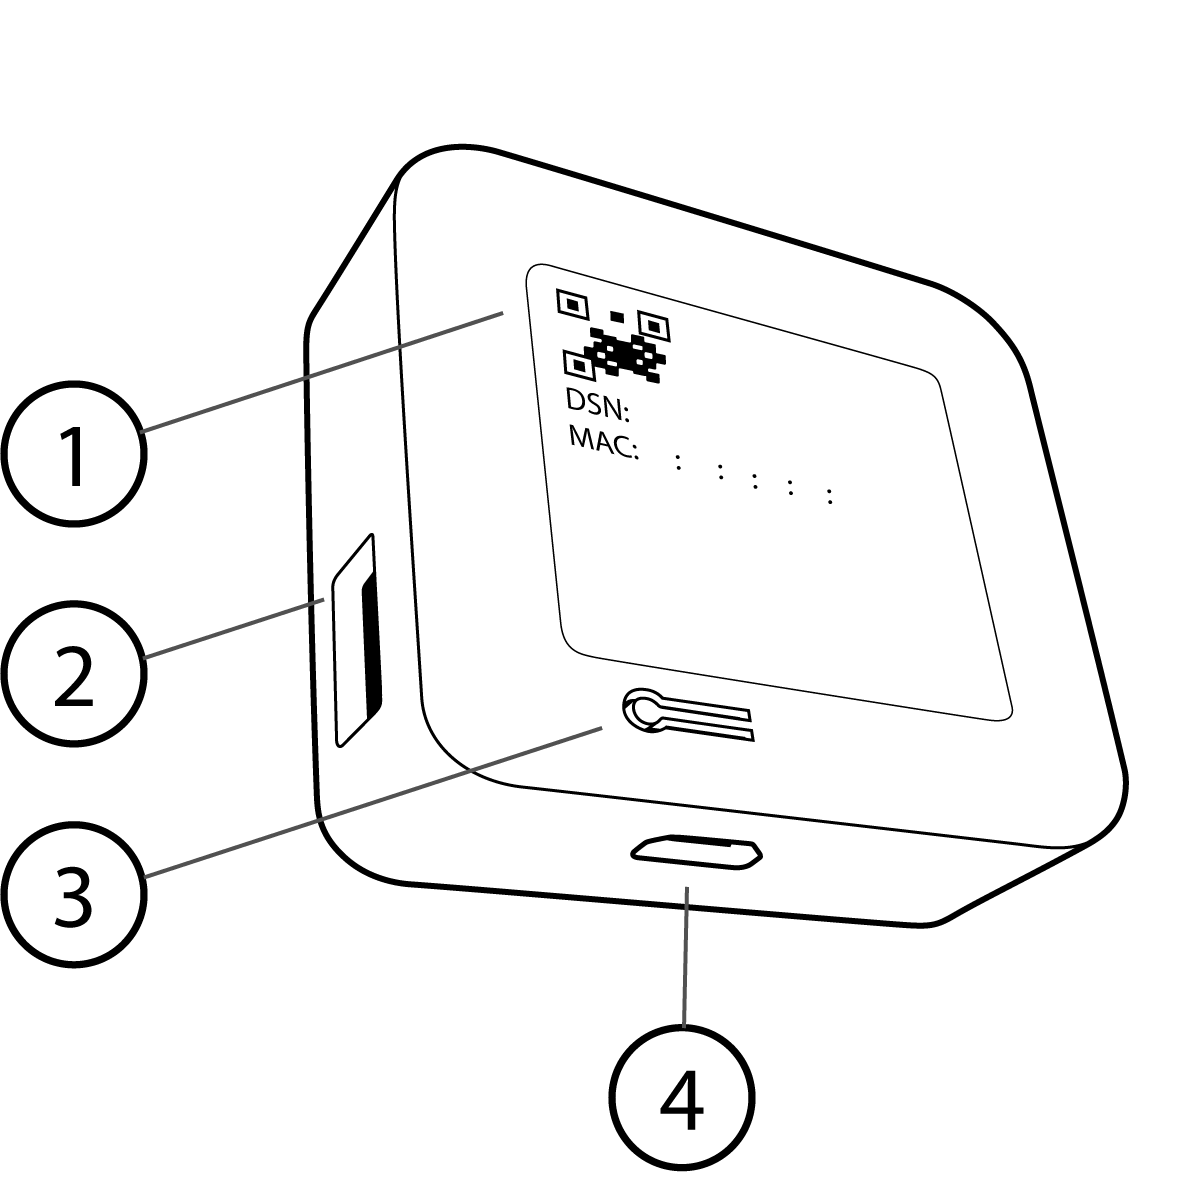 Bild der Rückseite eines Sync-Moduls 2 mit dem QR-Code der Seriennummer, dem USB-A-Anschluss für ein Laufwerk mit bis zu 256 Gigabyte, der Reset-Taste auf der Rückseite des Sync-Moduls und dem Micro-USB-Stromanschluss